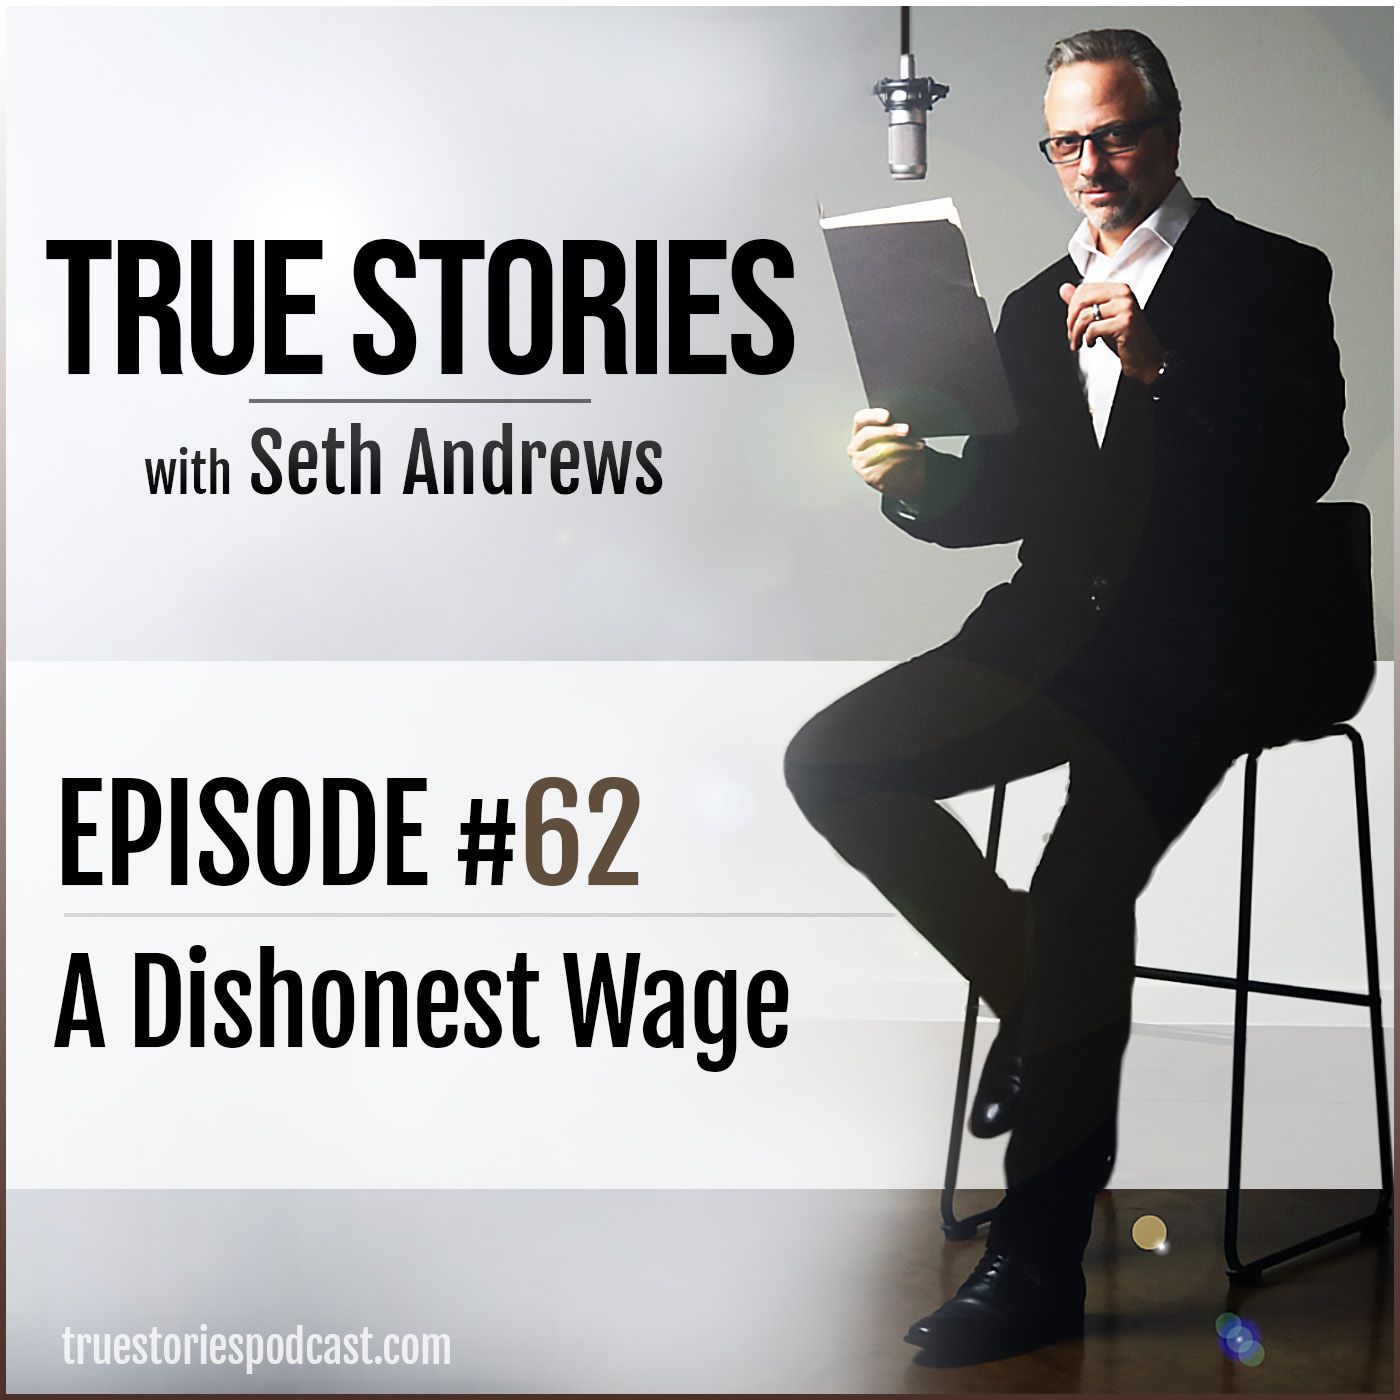 True Stories #62 - A Dishonest Wage